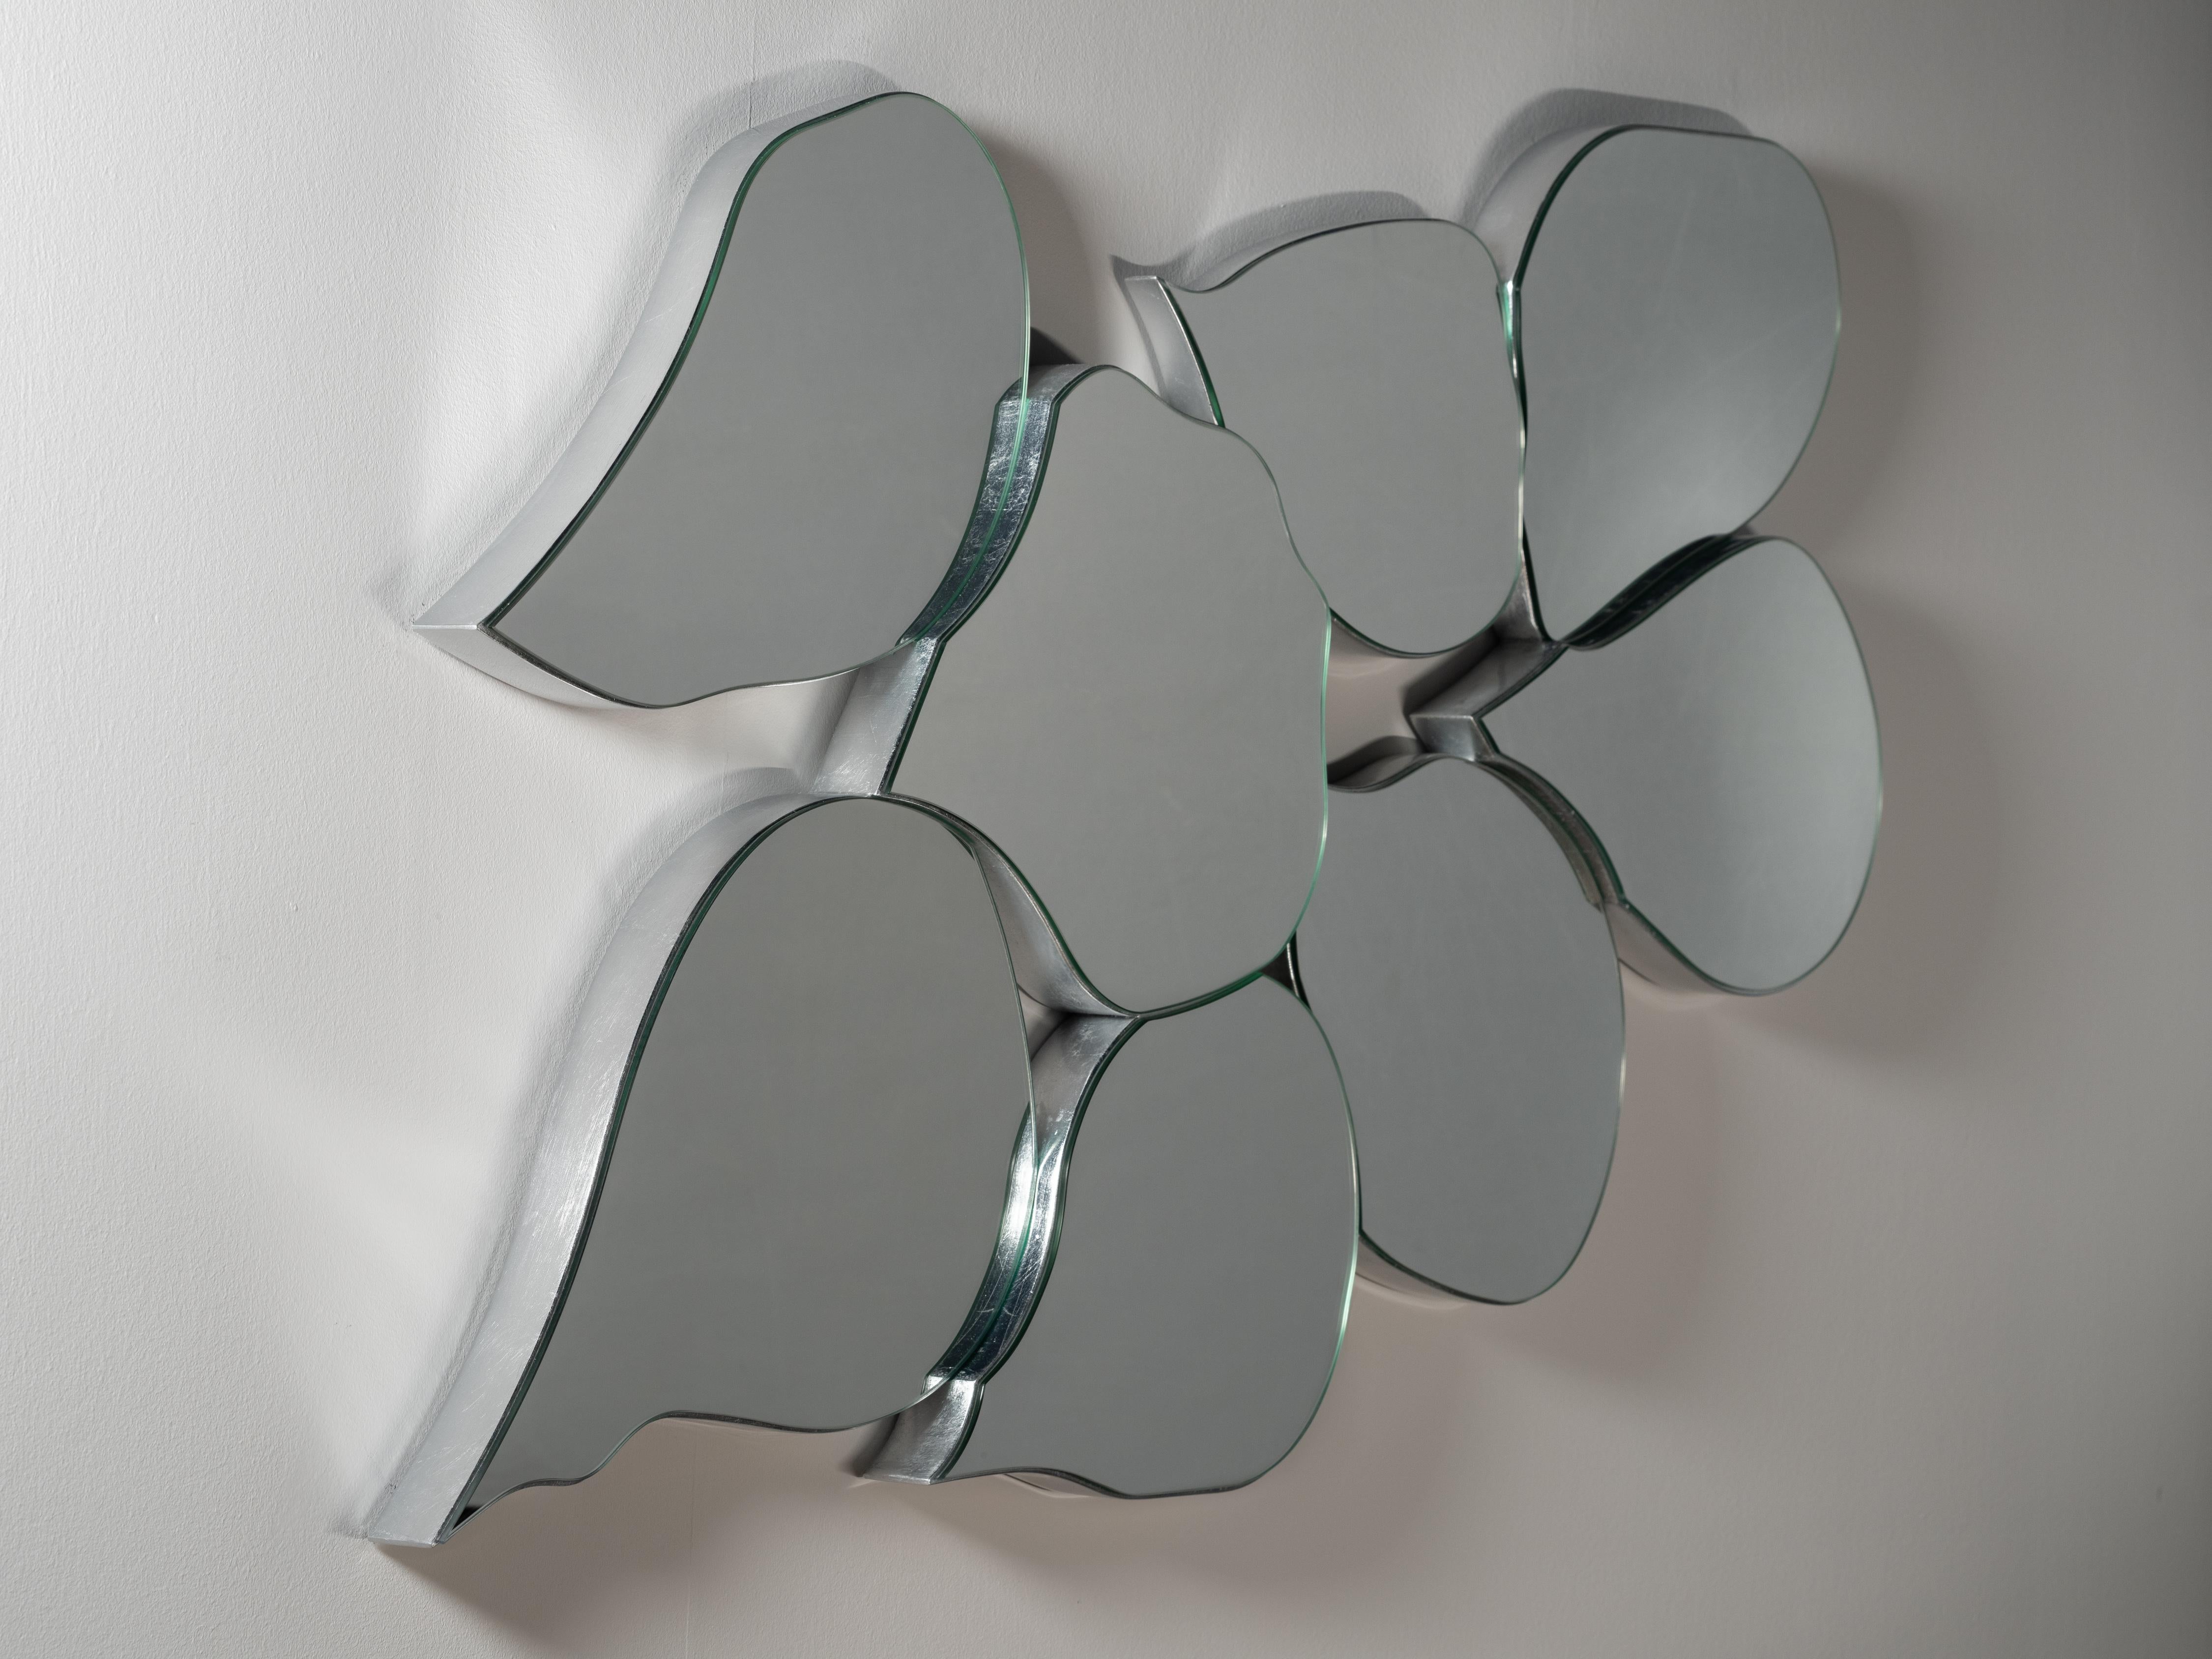 Infinity Wall Mirrors, Collection Collective, fait à la main au Portugal - Europe by GF Modern.

Le miroir mural Infinity reflète le passage du temps dans un regard infini, captivant l'attention à chaque rencontre. Avec son design en forme de pétale